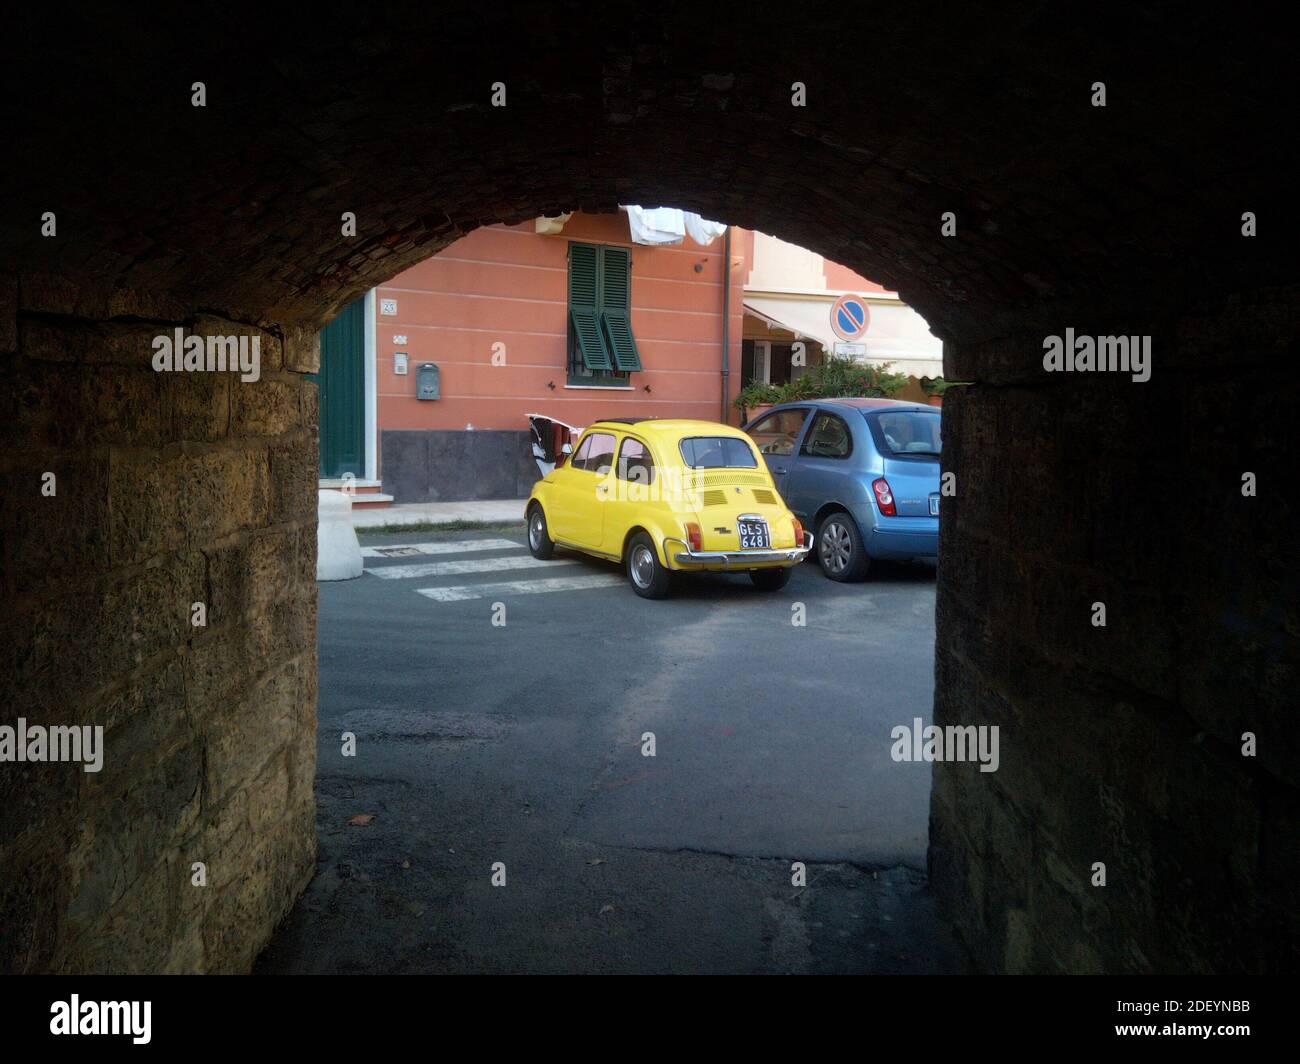 Five Lands, Italien - Sommer 2020: Ein ikonischer gelber Fiat Cinquecento in einer italienischen Straße geparkt Stockfoto